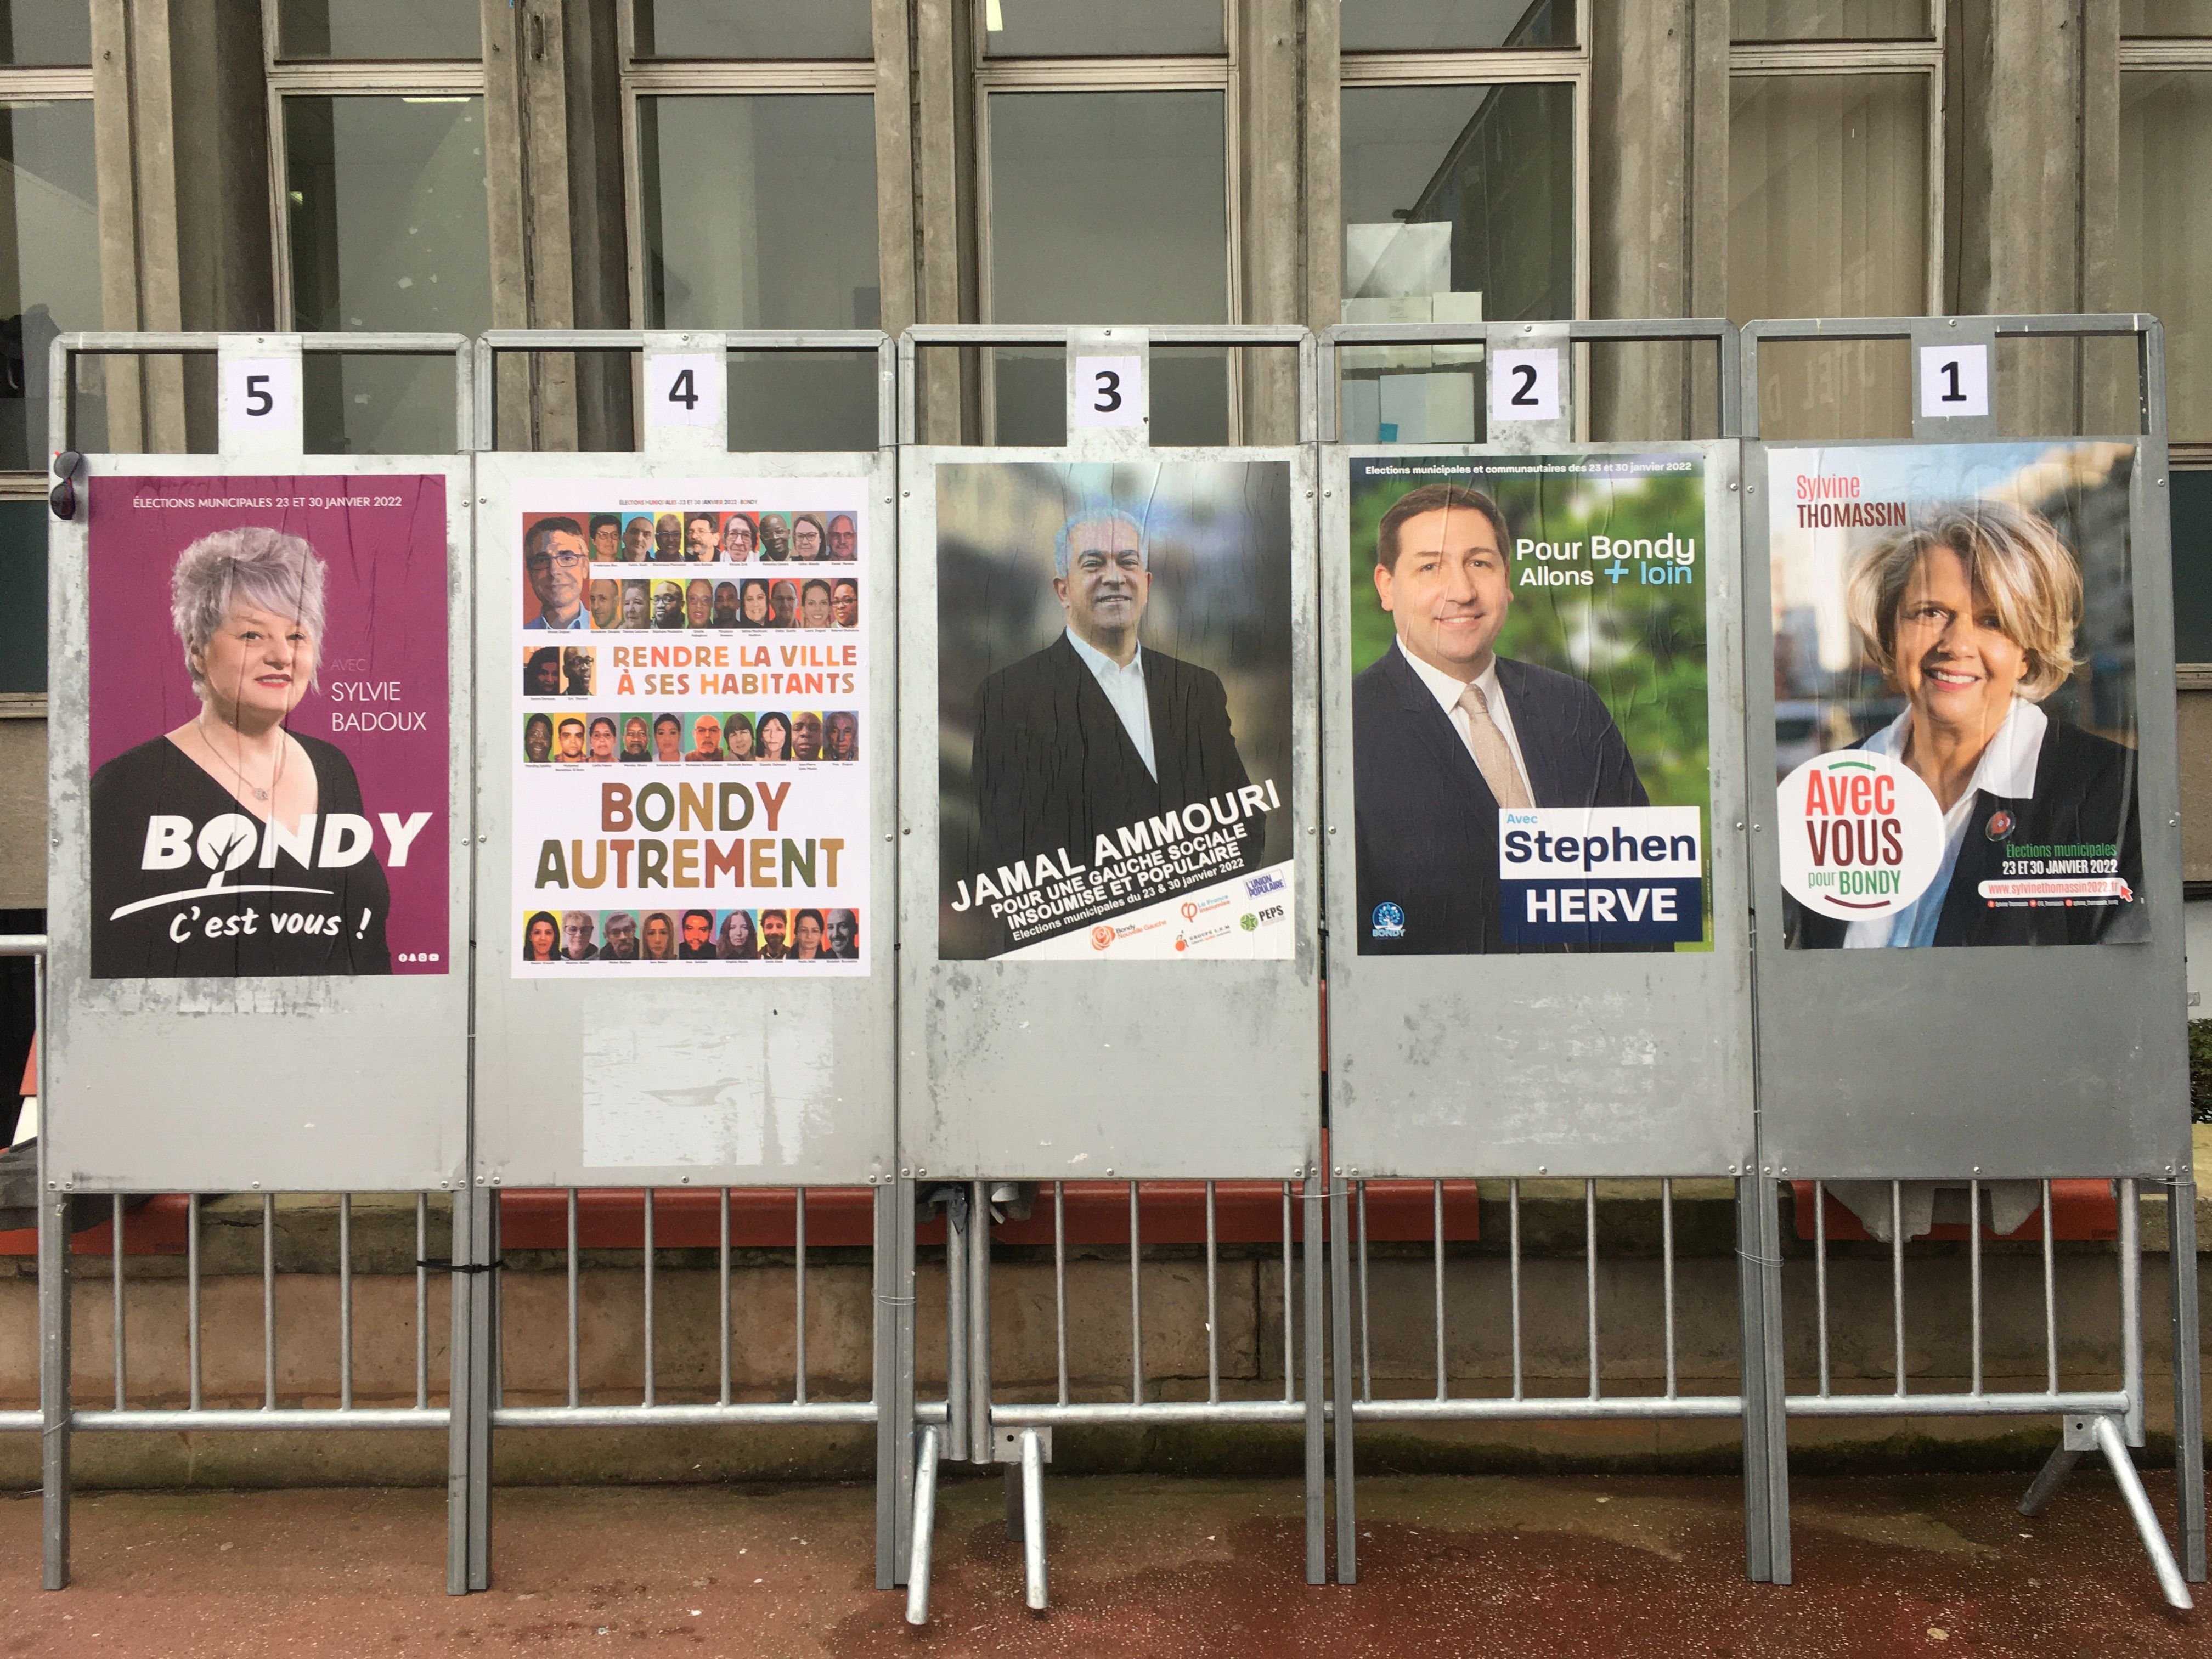 Bondy, le 19 janvier. Cinq candidats étaient en lice au premier tour des élections municipales partielles. Ils ne sont plus que deux pour le second tour : Stephen Hervé (LR) et Sylvine Thomassin (PS). LP/H.H.